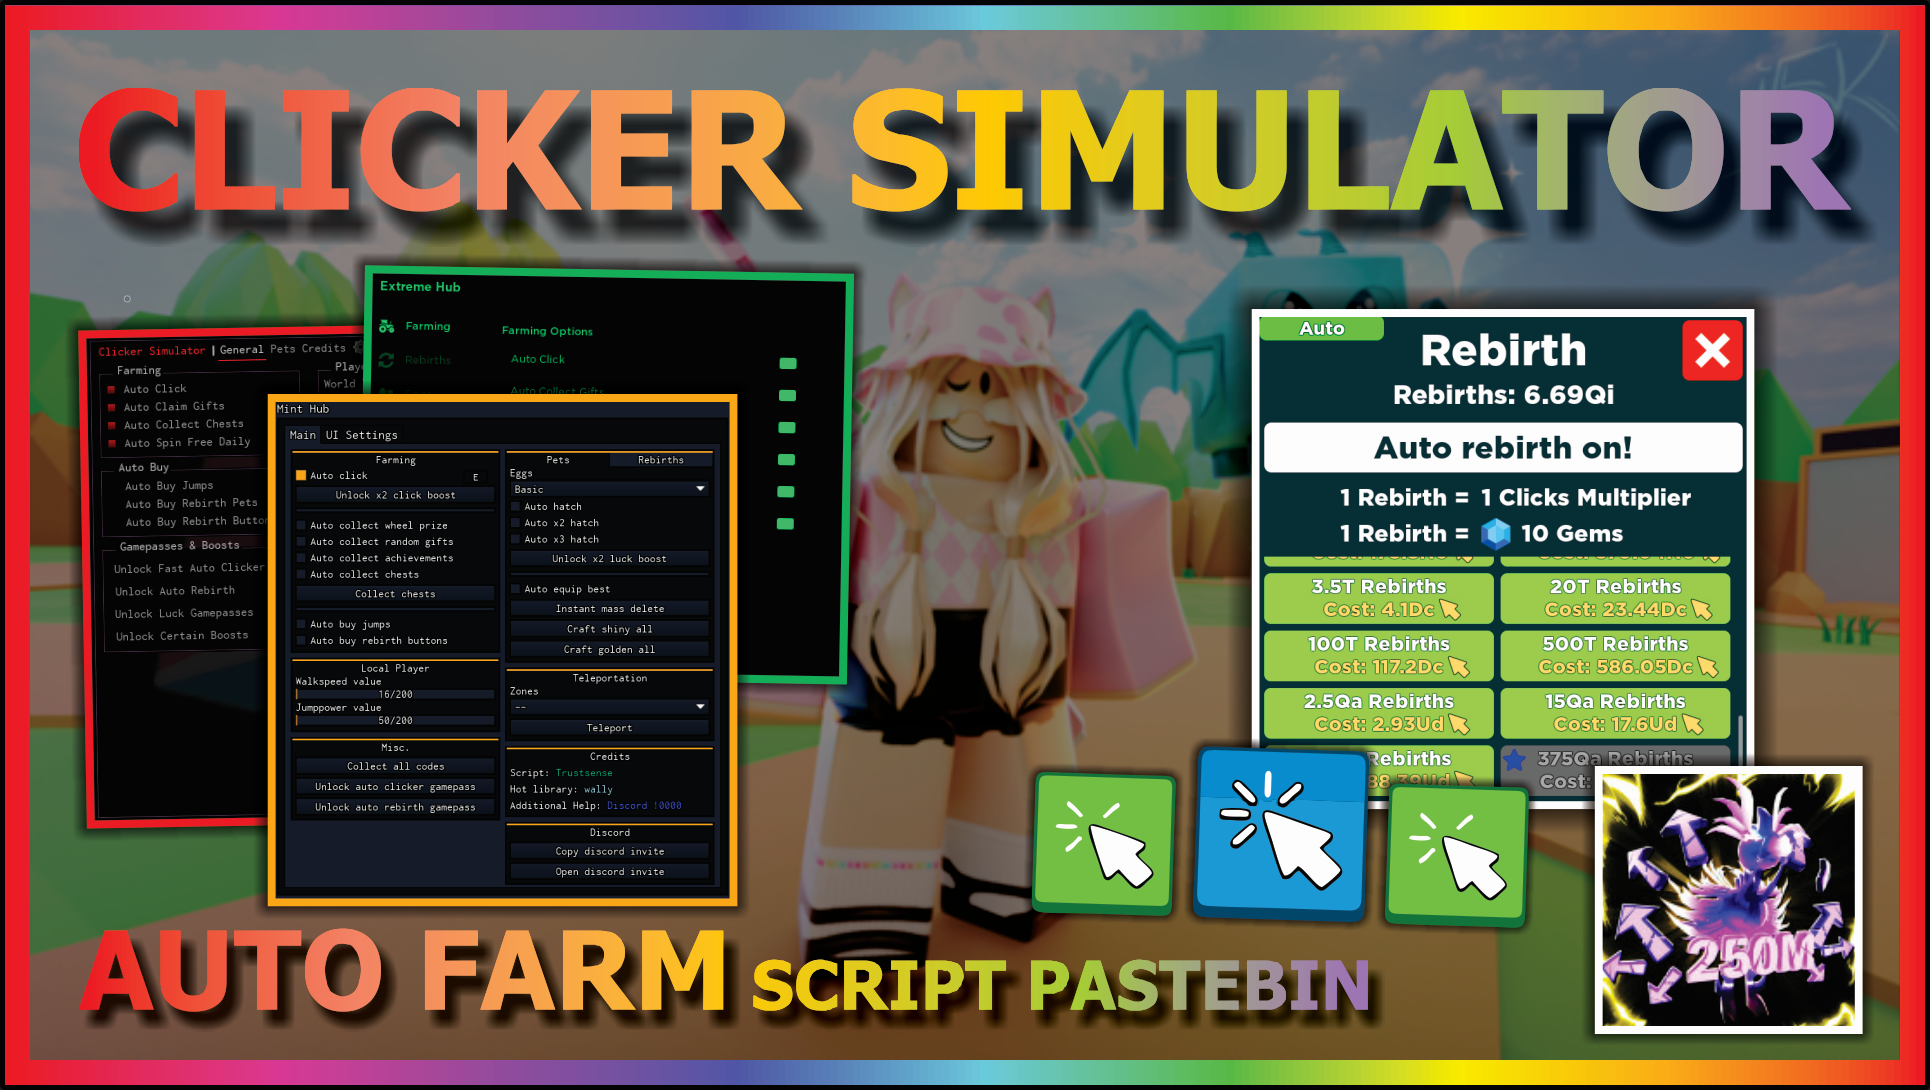 Clicker Simulator Script - Auto Click, Auto Collect Gifts, Open Egg